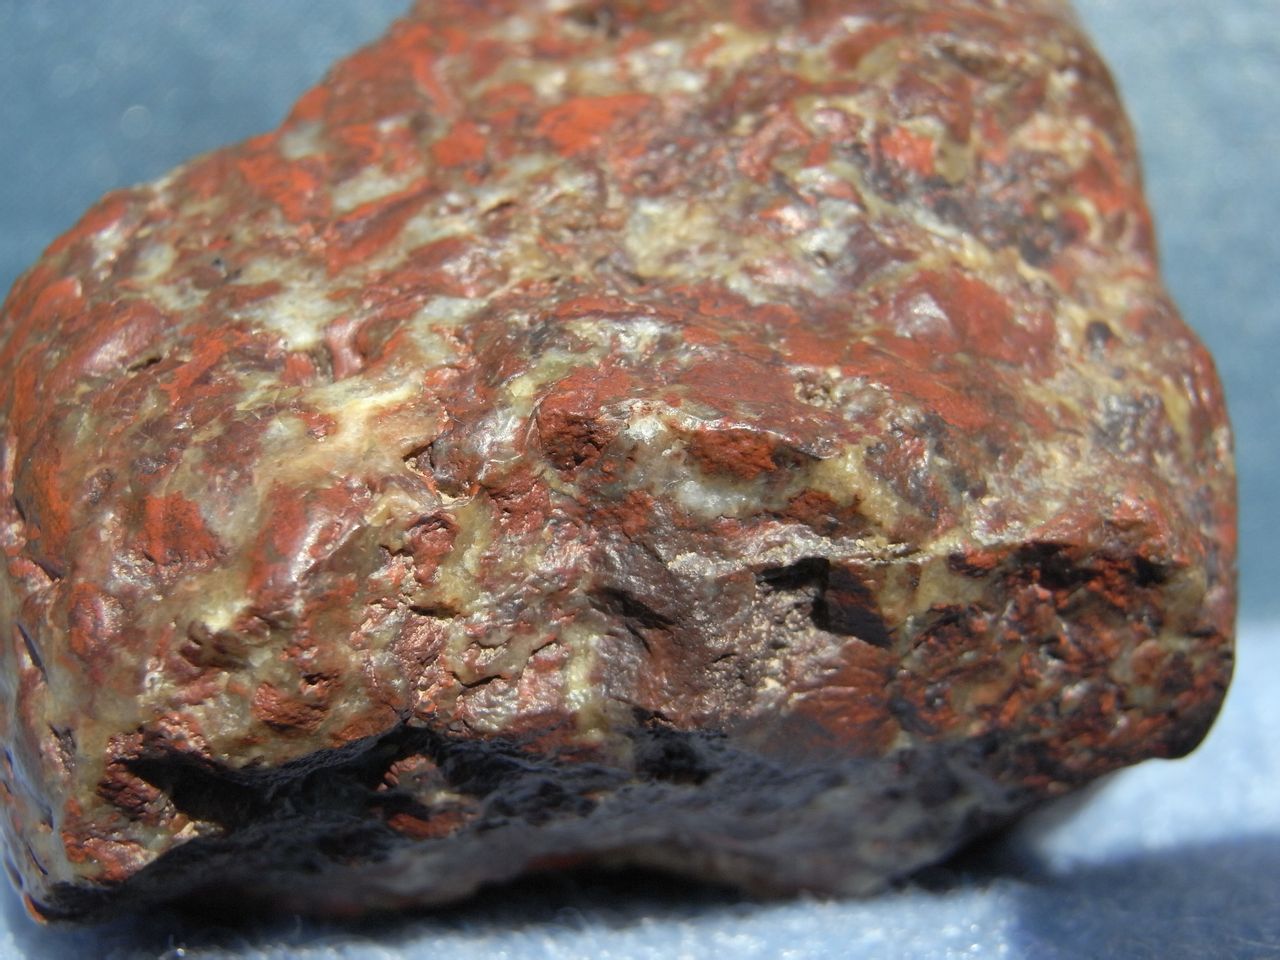 火星隕石